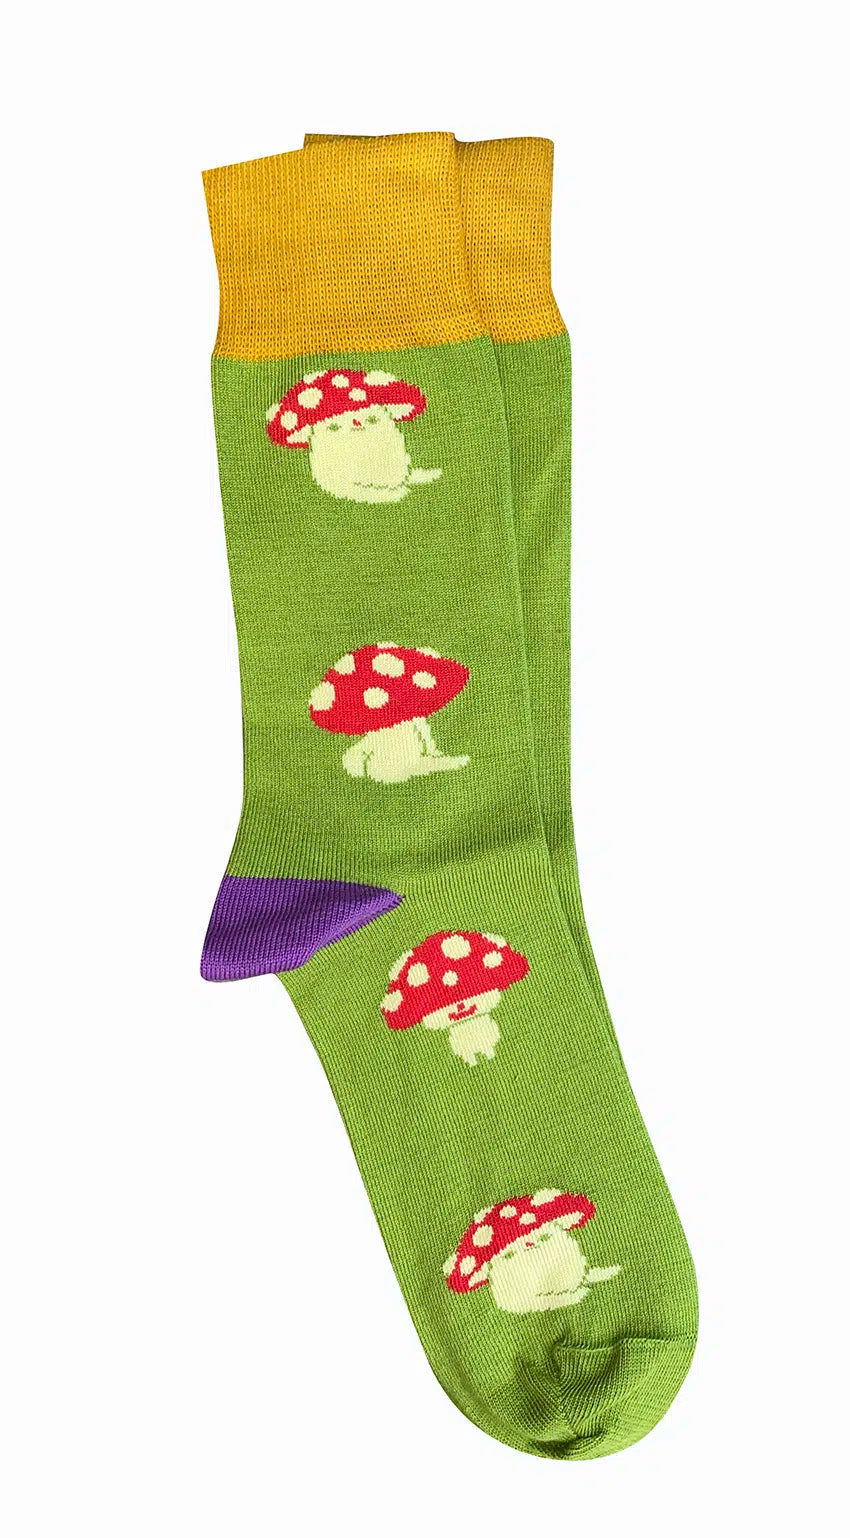 'Mushrooms' Cotton Socks - Tightology socks Tightology Lime 